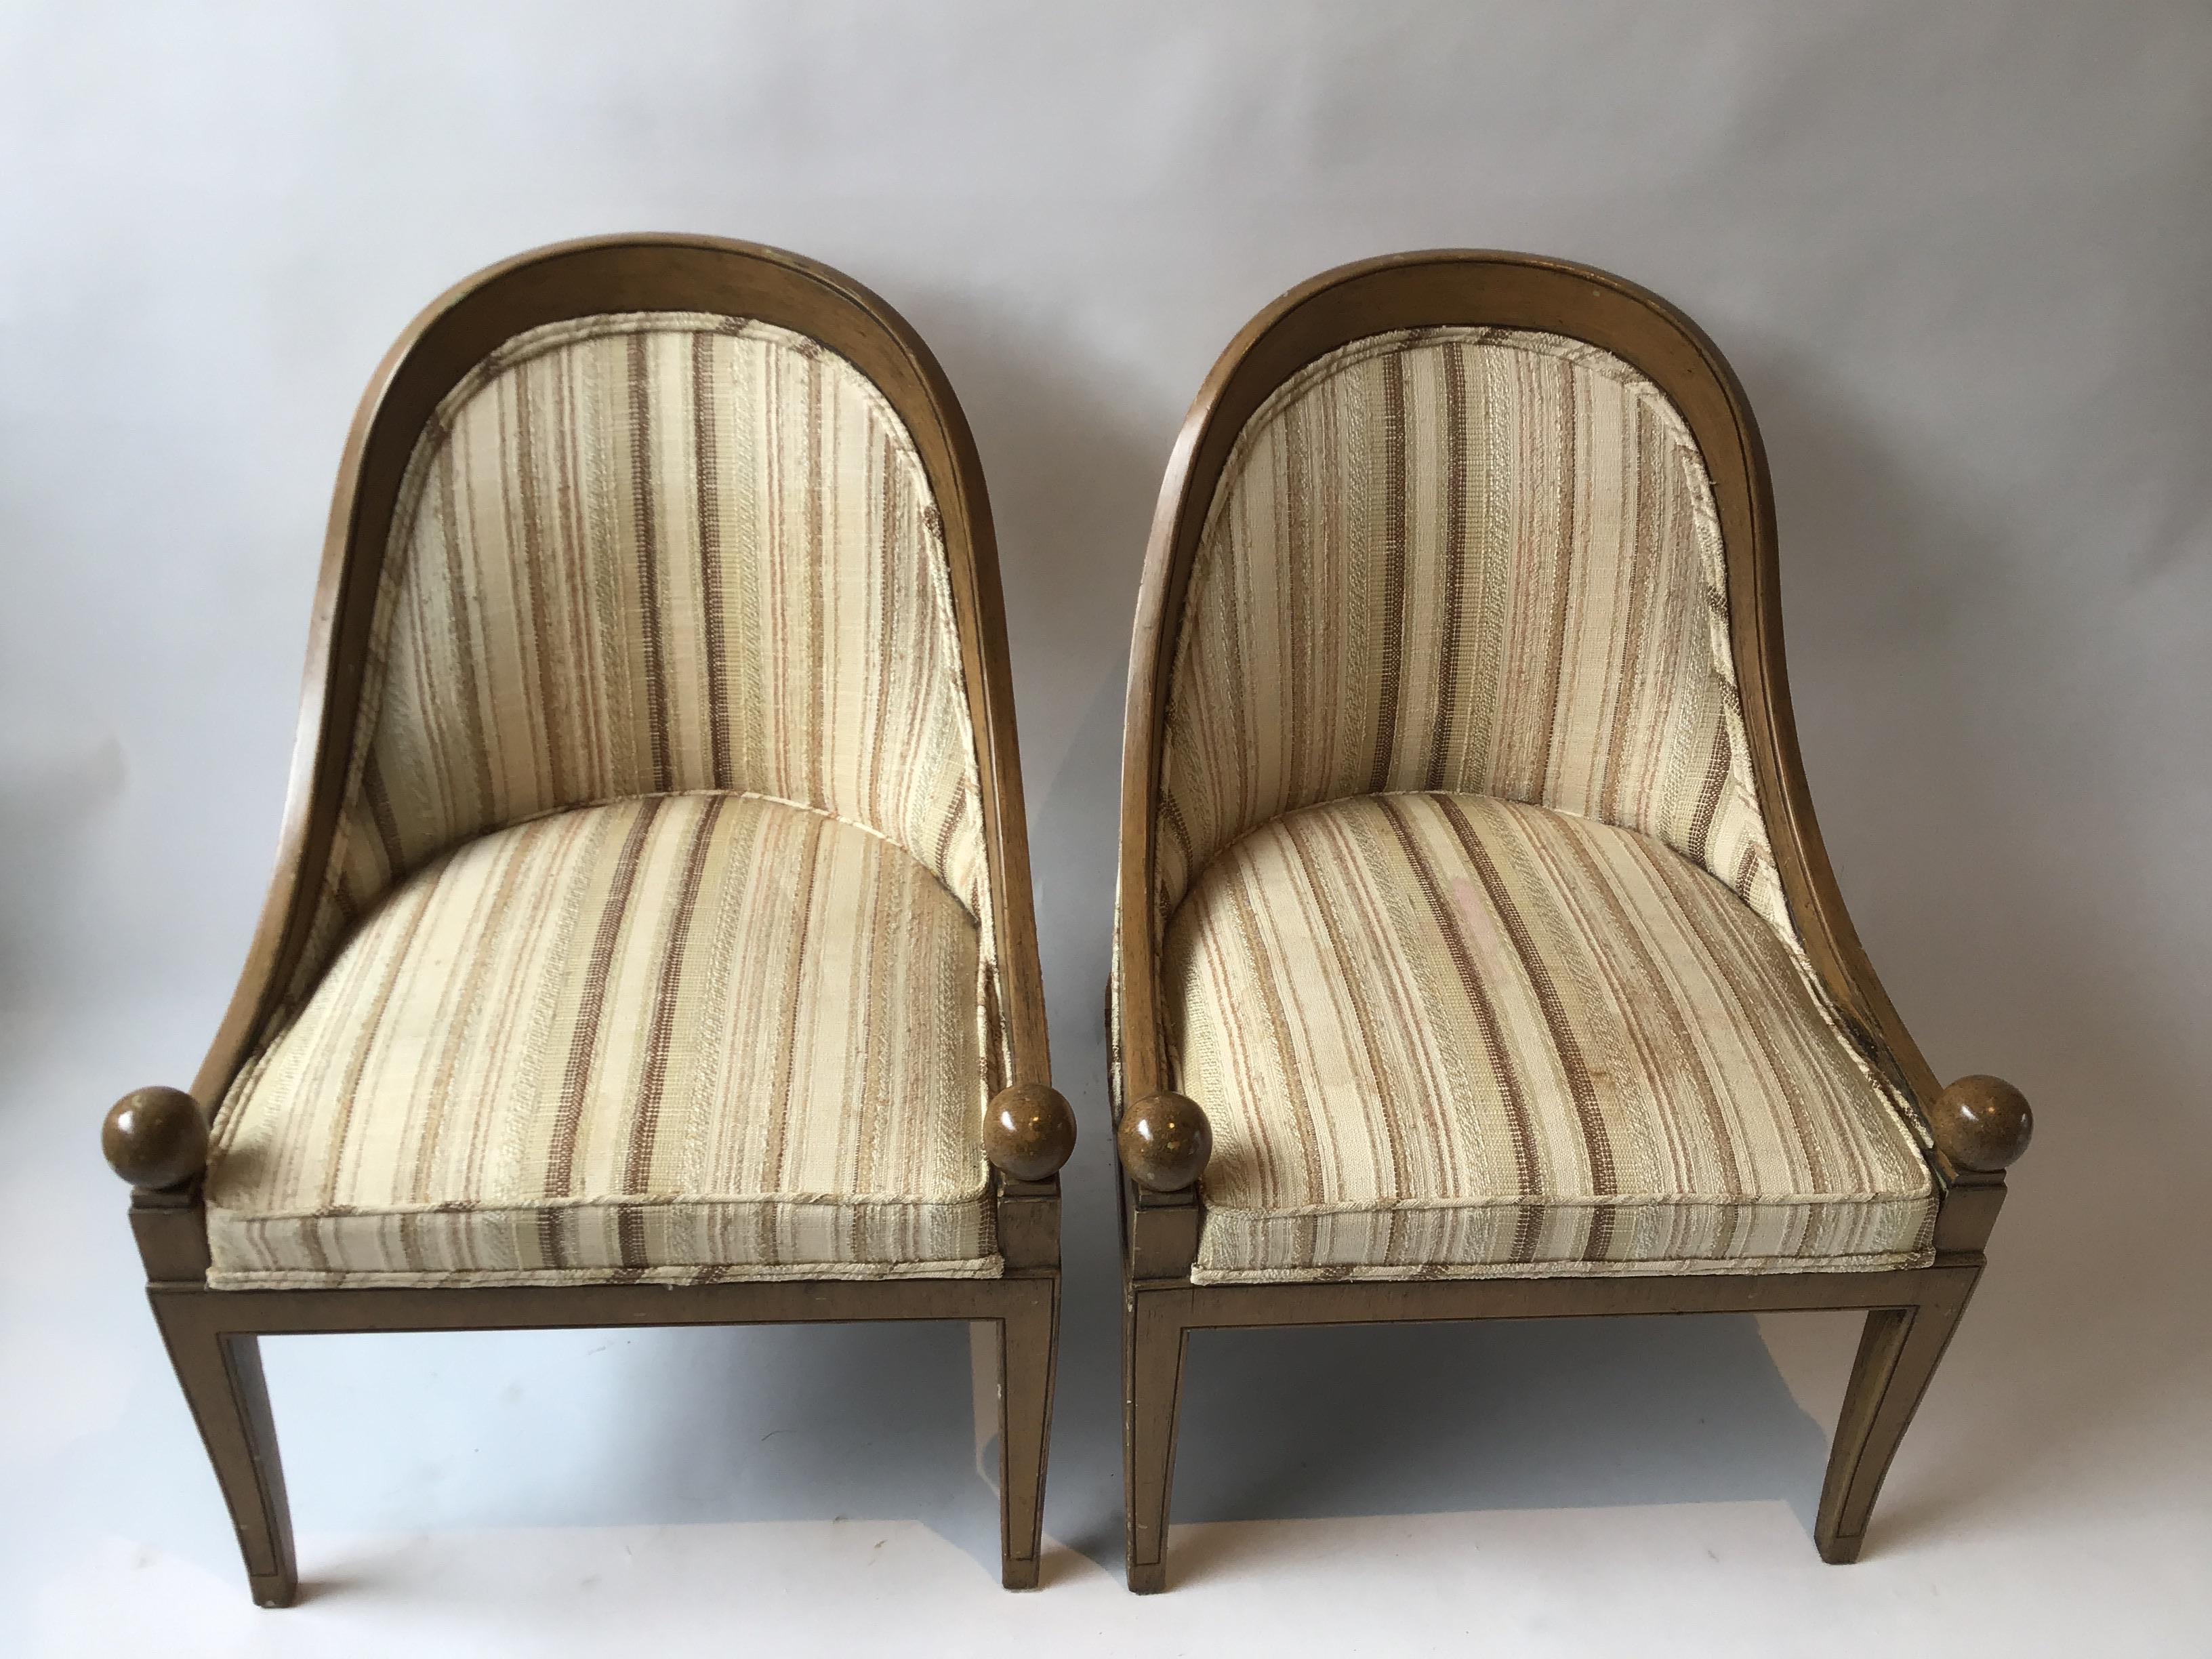 Paar klassische Holzstühle mit Löffelrücken aus den 1960er Jahren. Muss neu gepolstert werden.